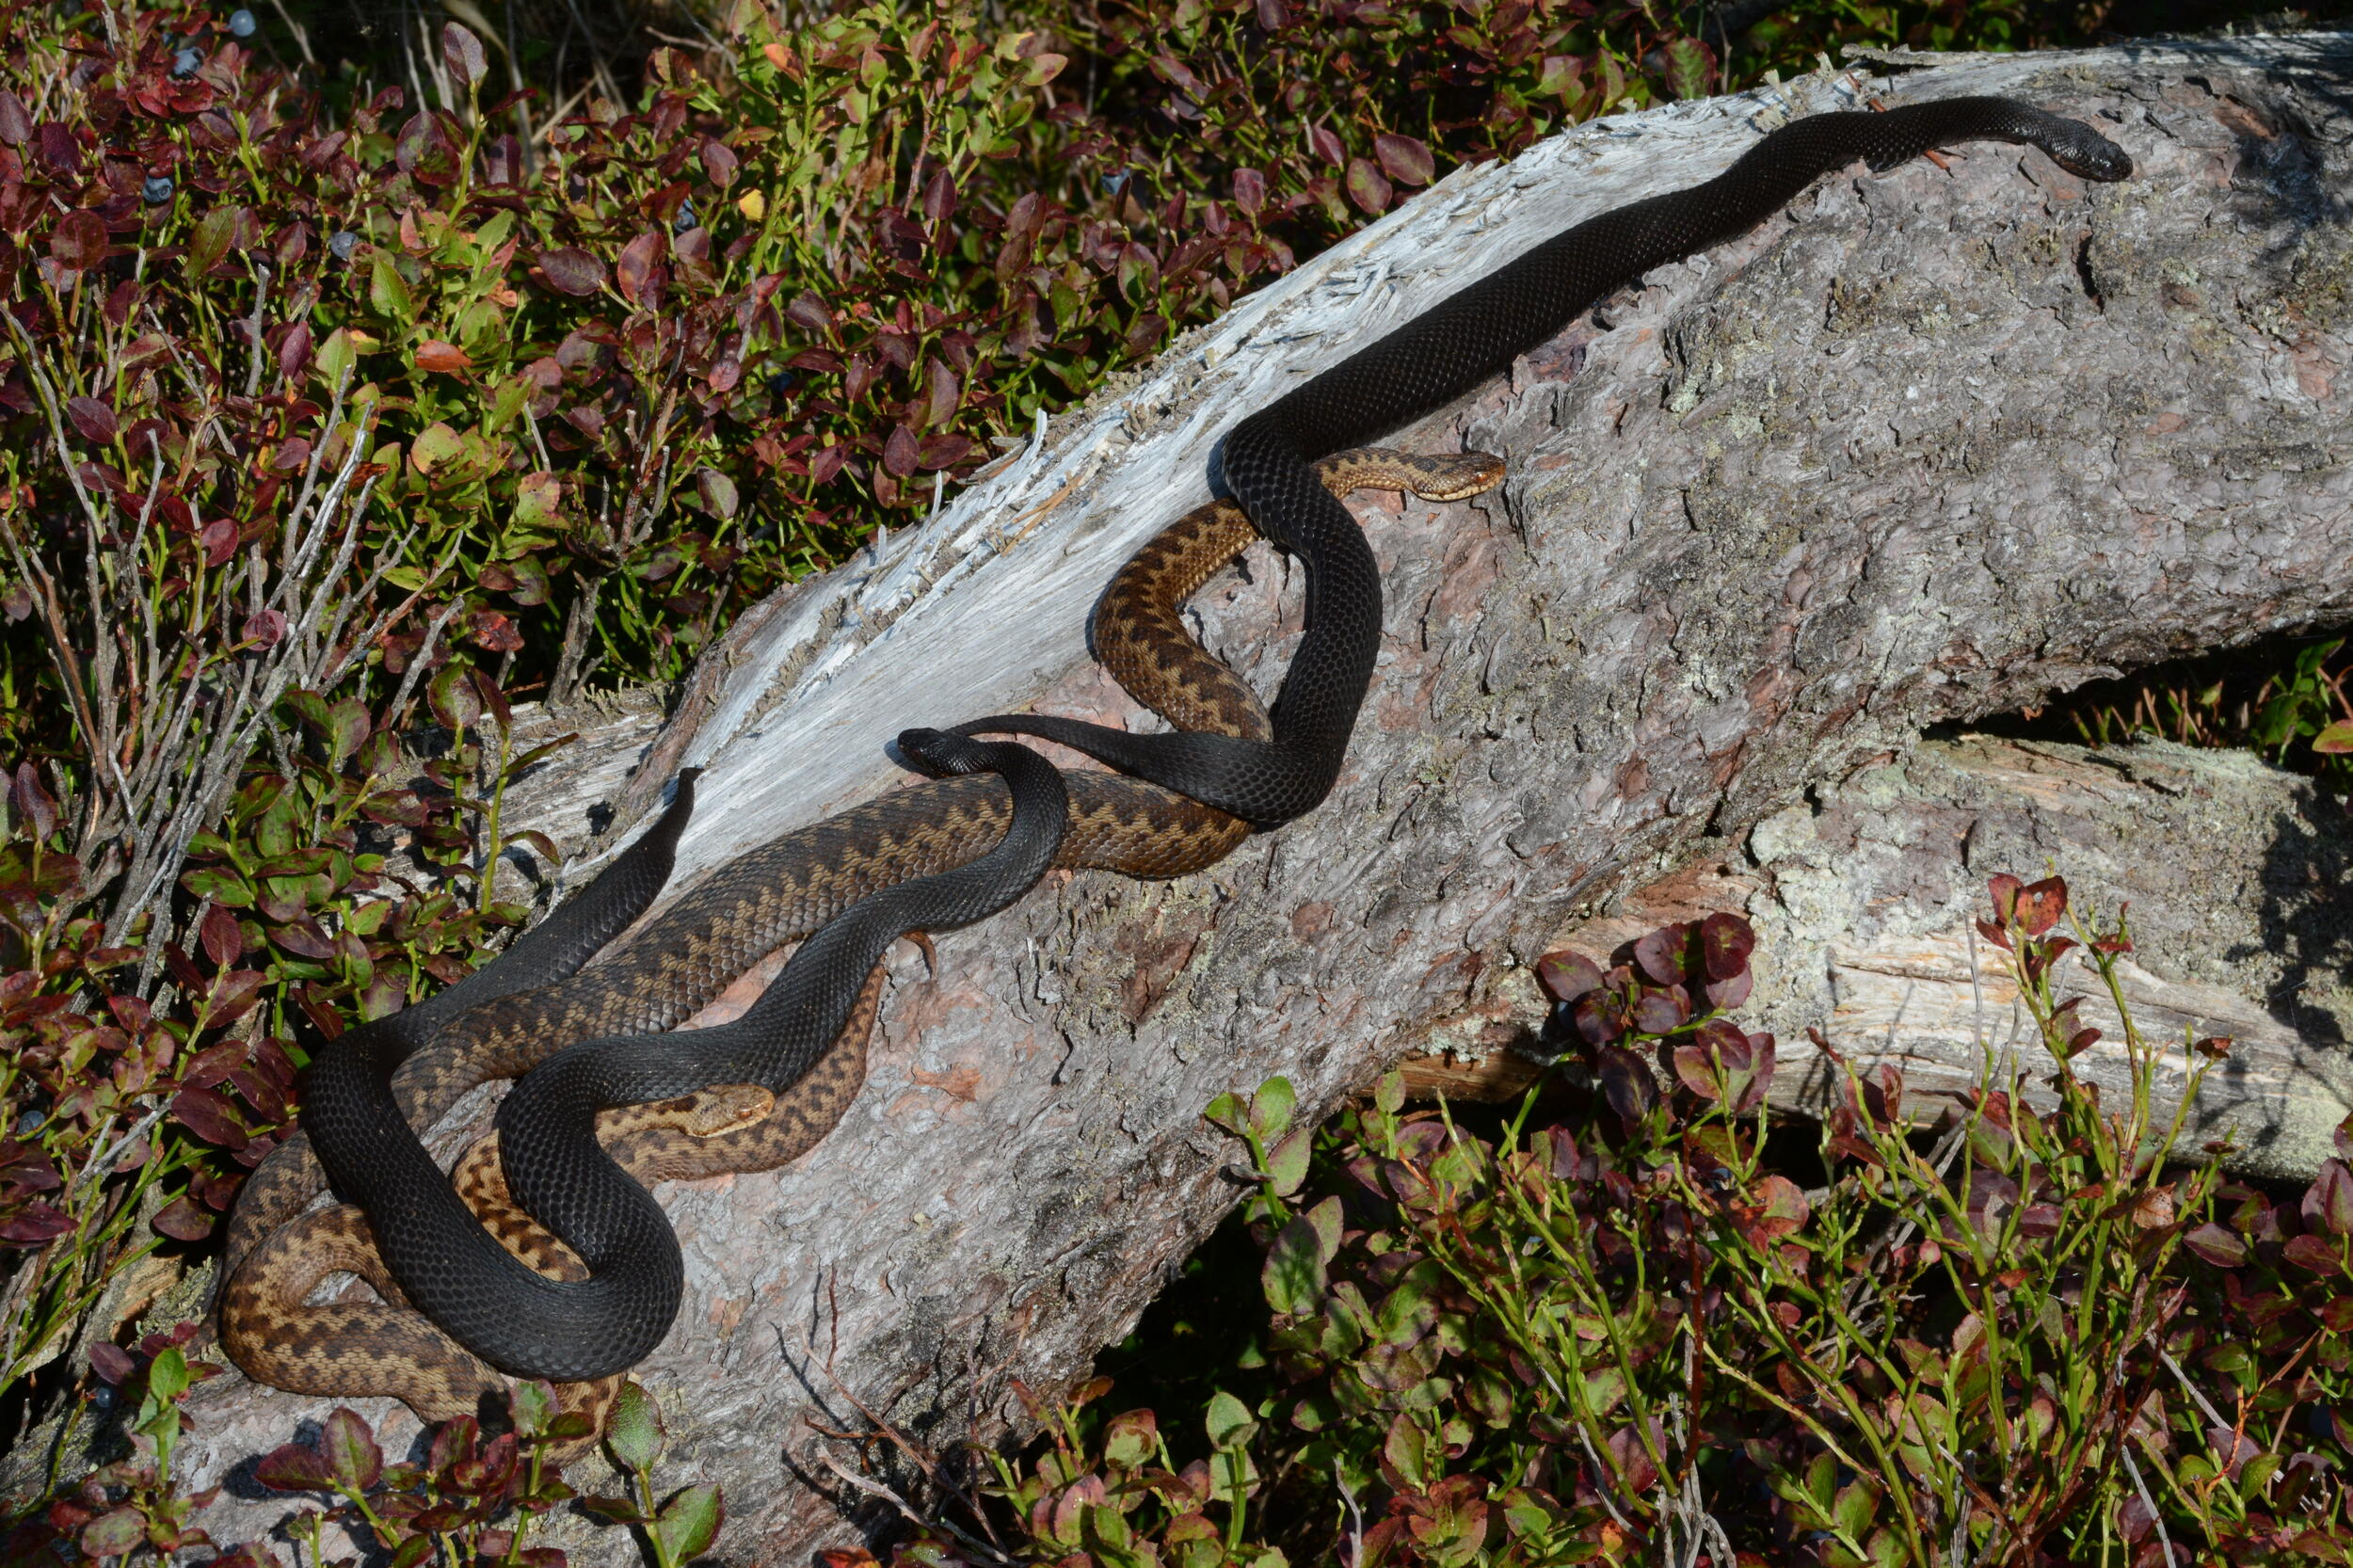 Auf einem Stück Totholz liegen ausgestreckt vier Schlangen. Zwei in braun mit Zick-Zack-Muster, zwei in schwarz.